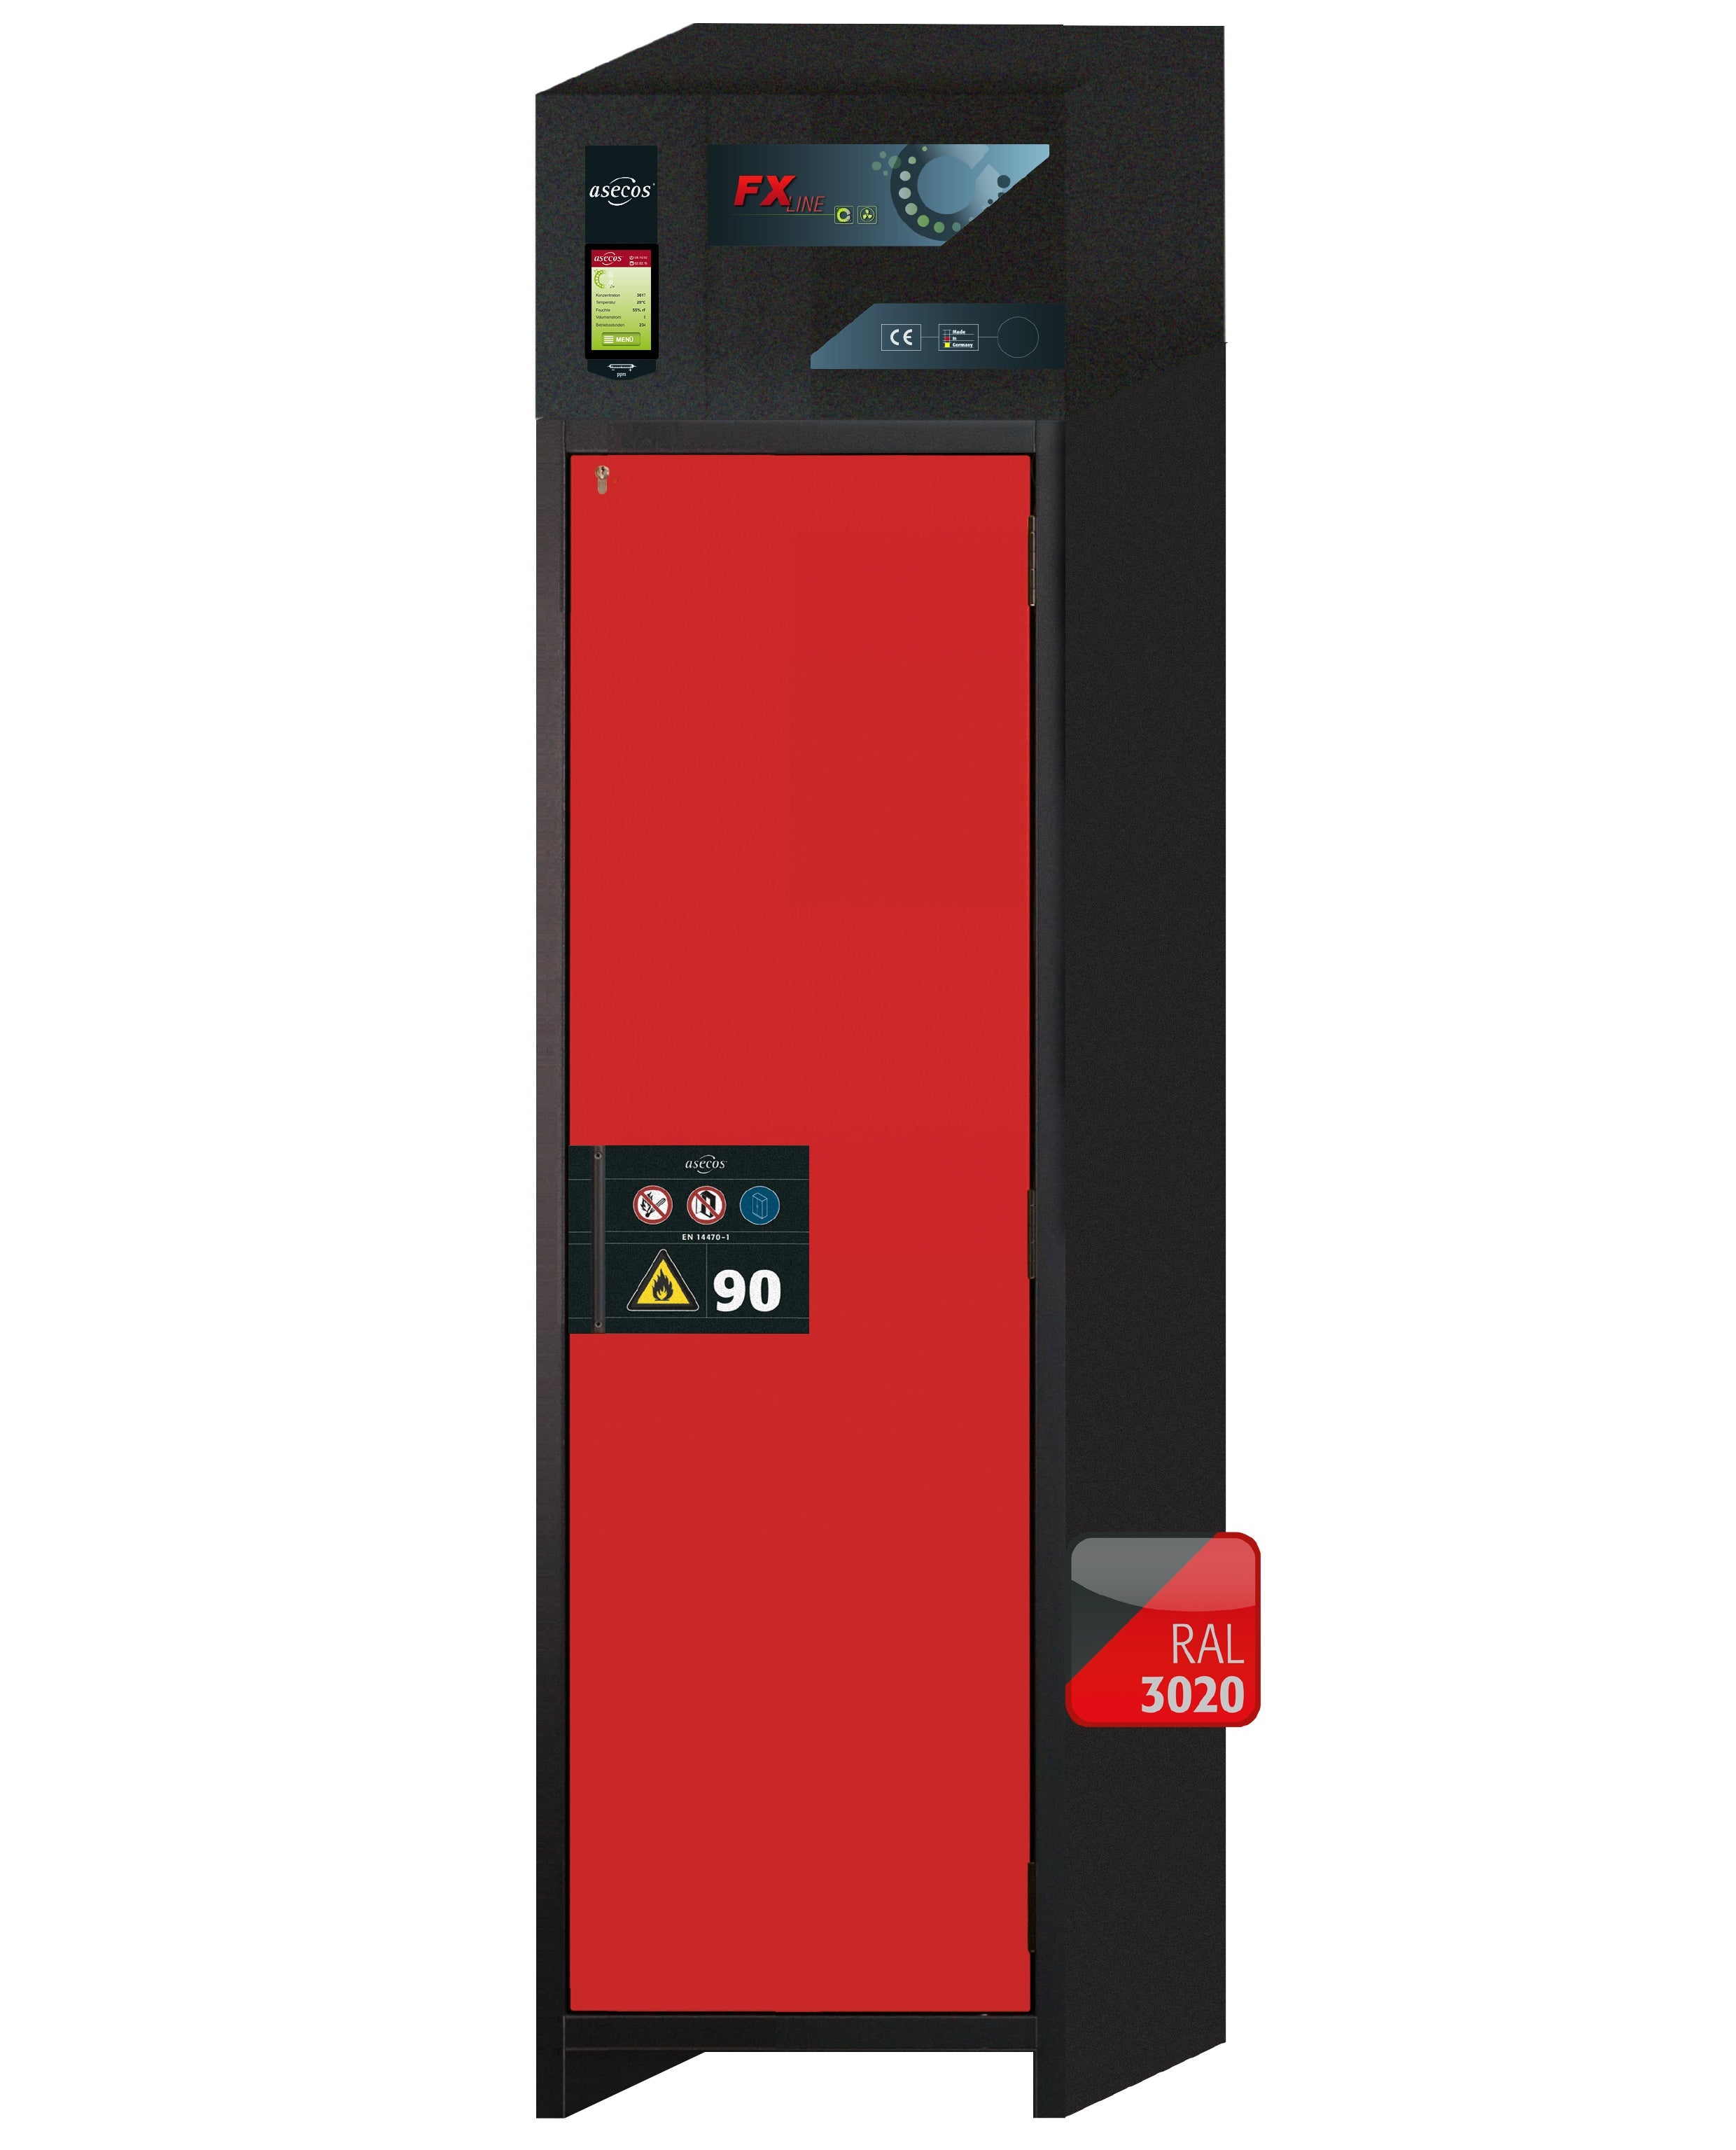 Armoire de filtration d'air recyclé type 90 FX-PEGASUS-90 modèle FX90.229.060.WDACR en rouge signalisation RAL 3020 avec 2 plateaux coulissants standard (acier inoxydable 1.4301)